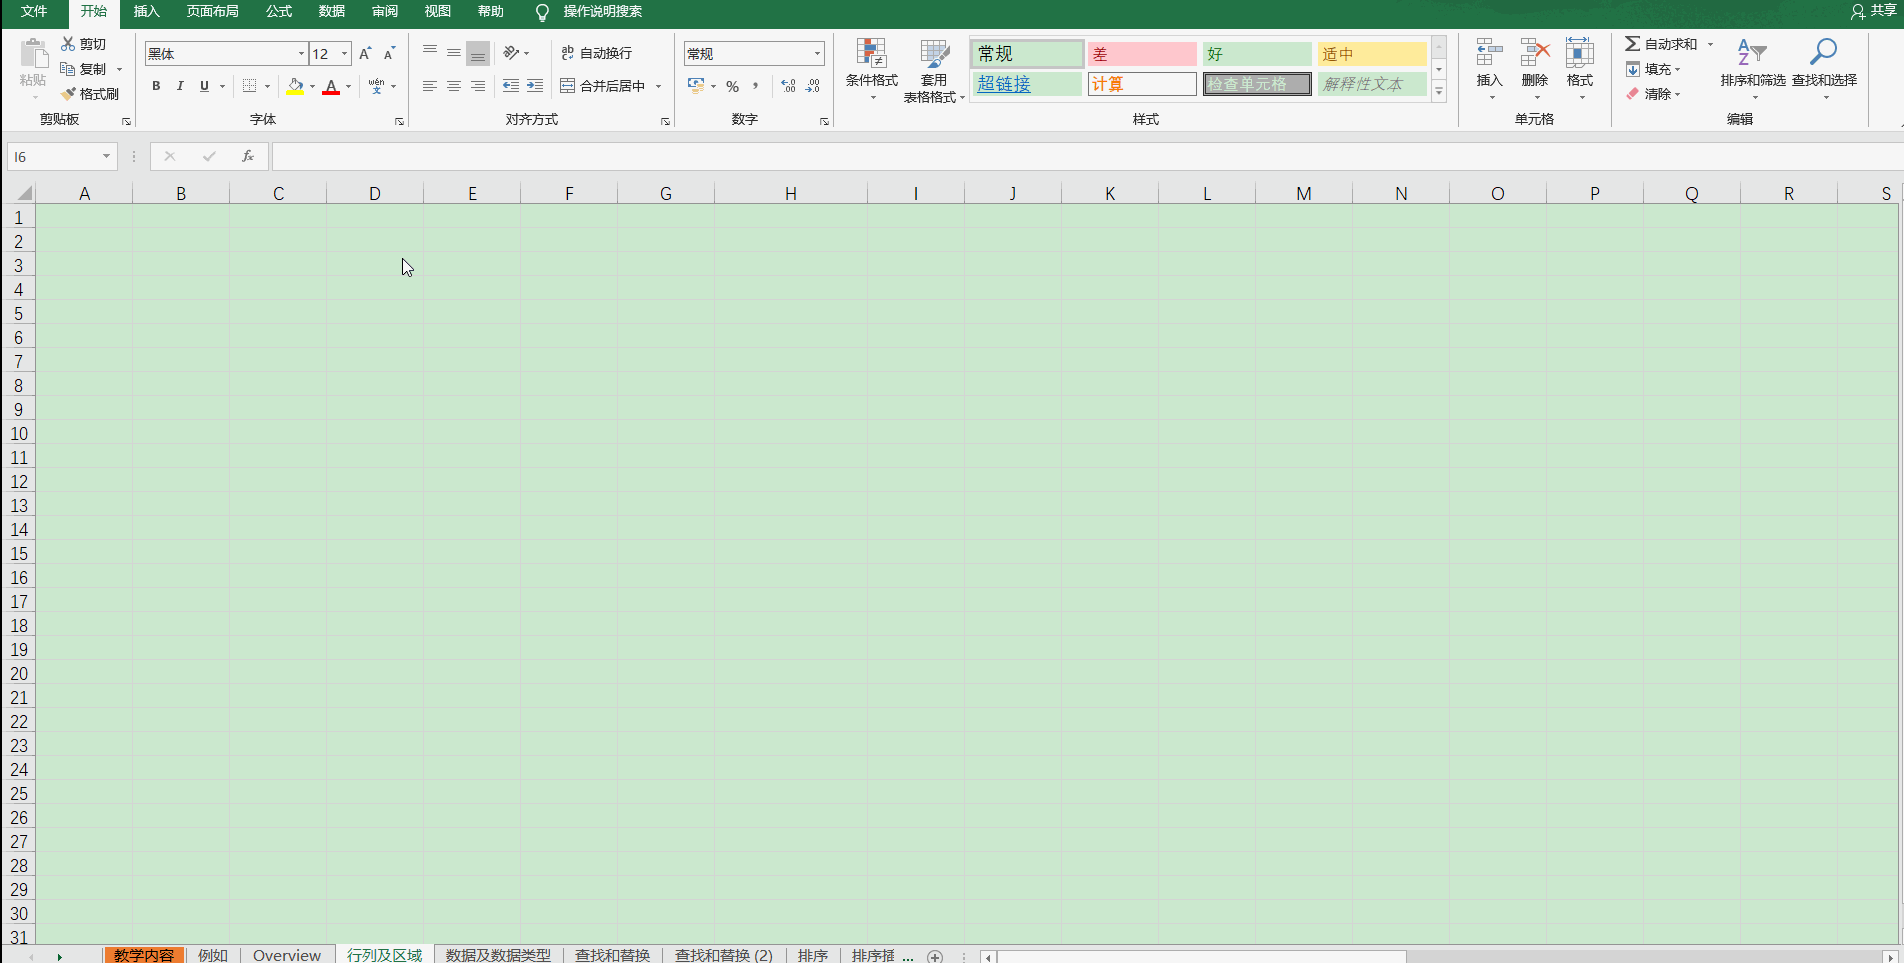 Excelの基本的な選択編集